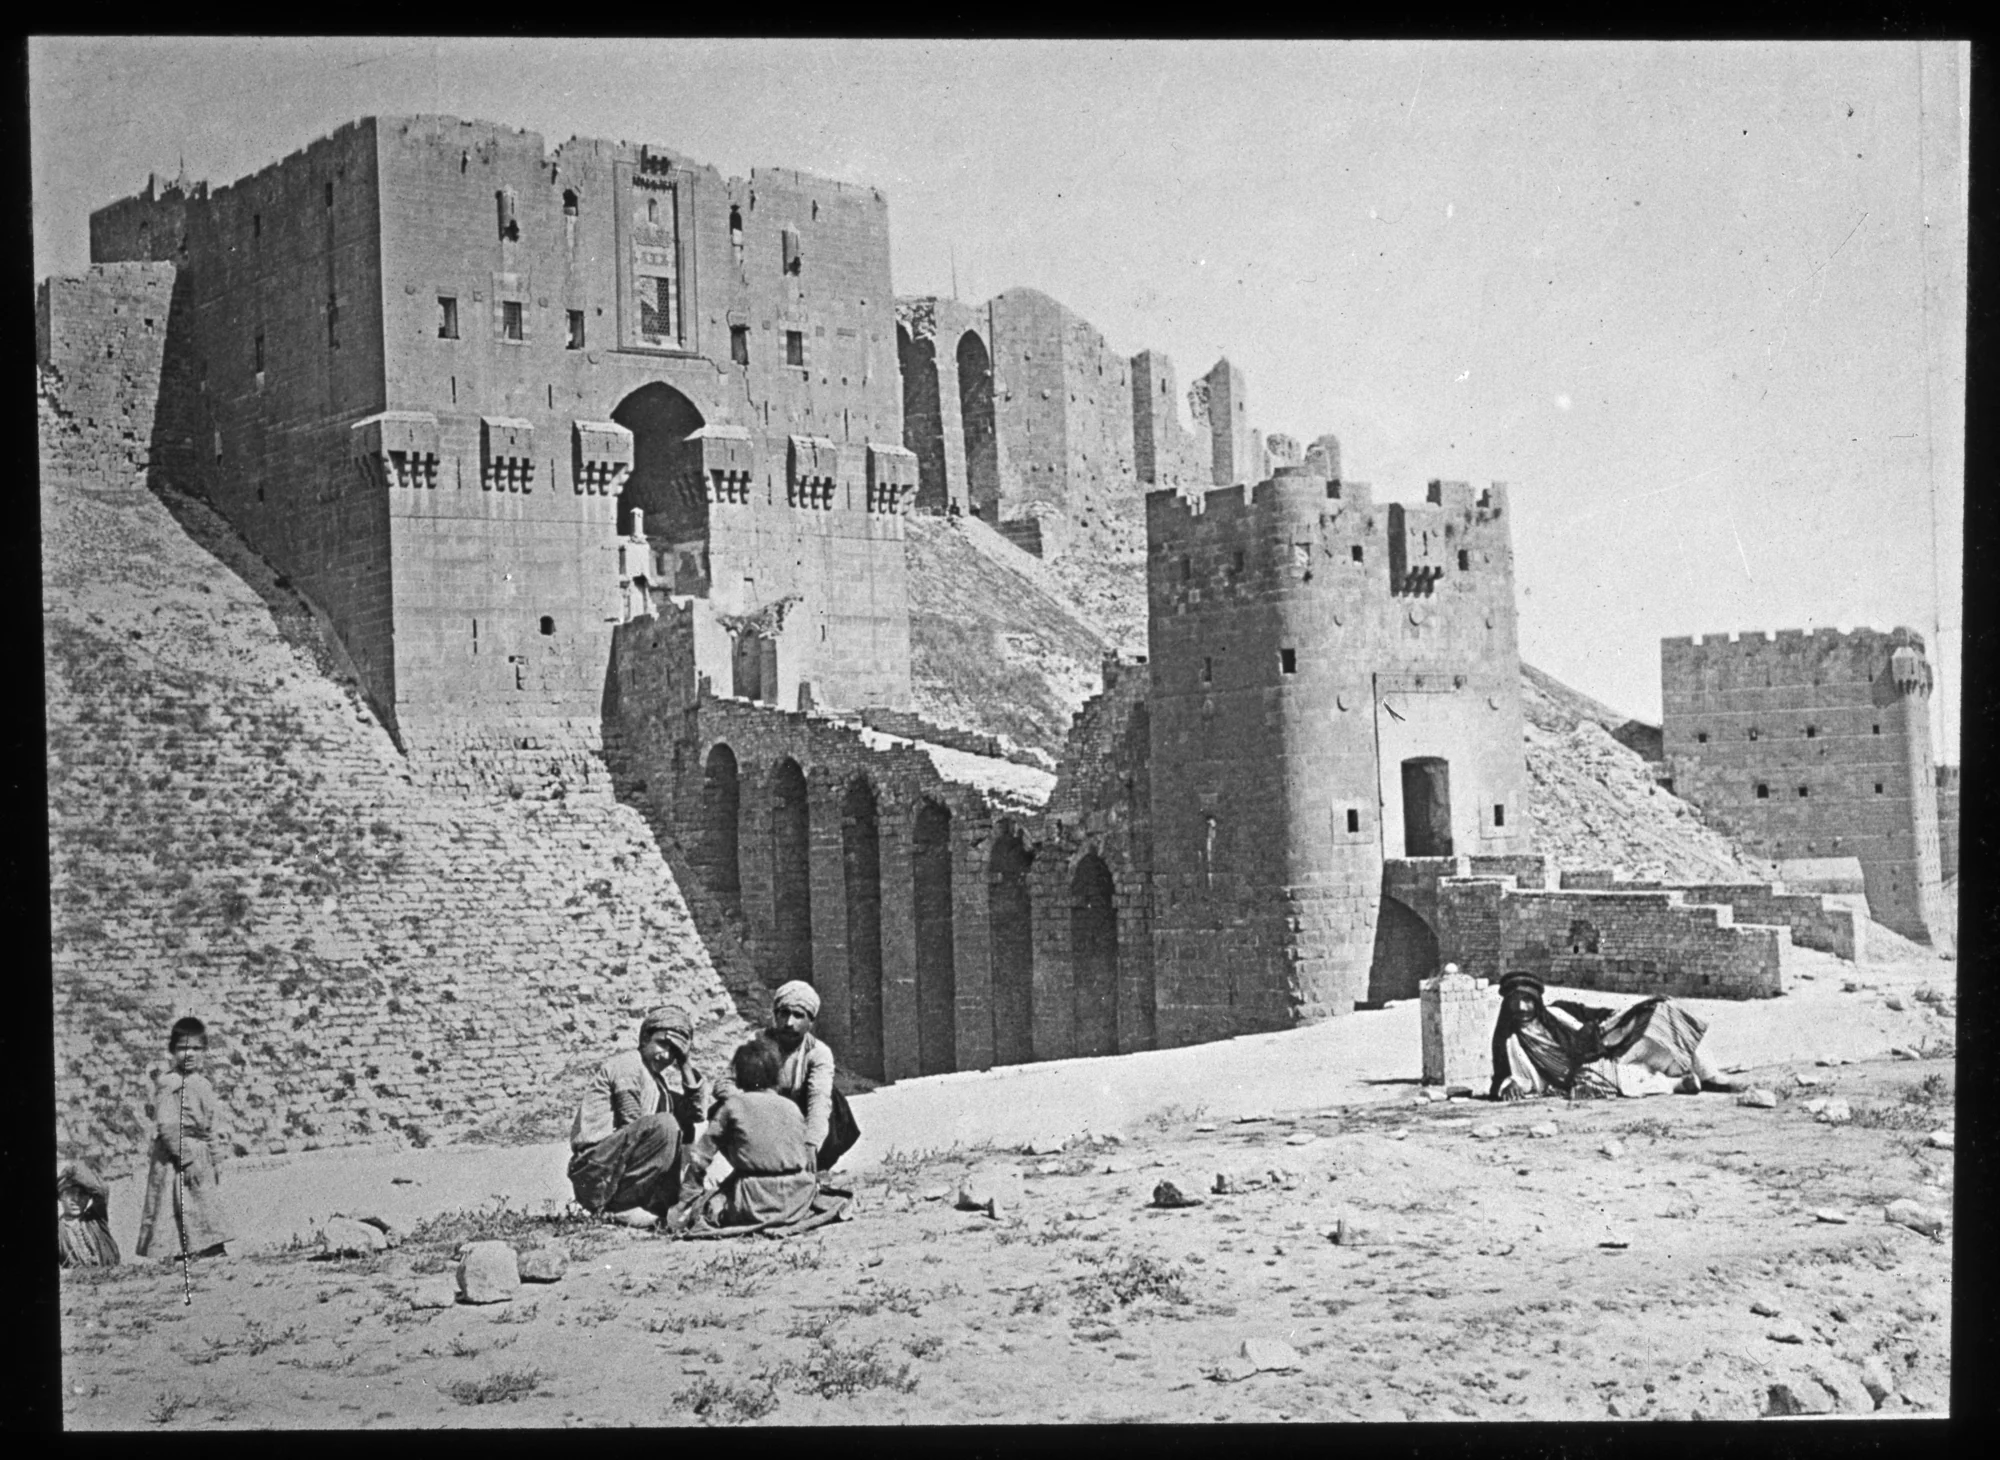 قلعة حلب، مشهد عام لبوابة الدخول وجسر القلعة